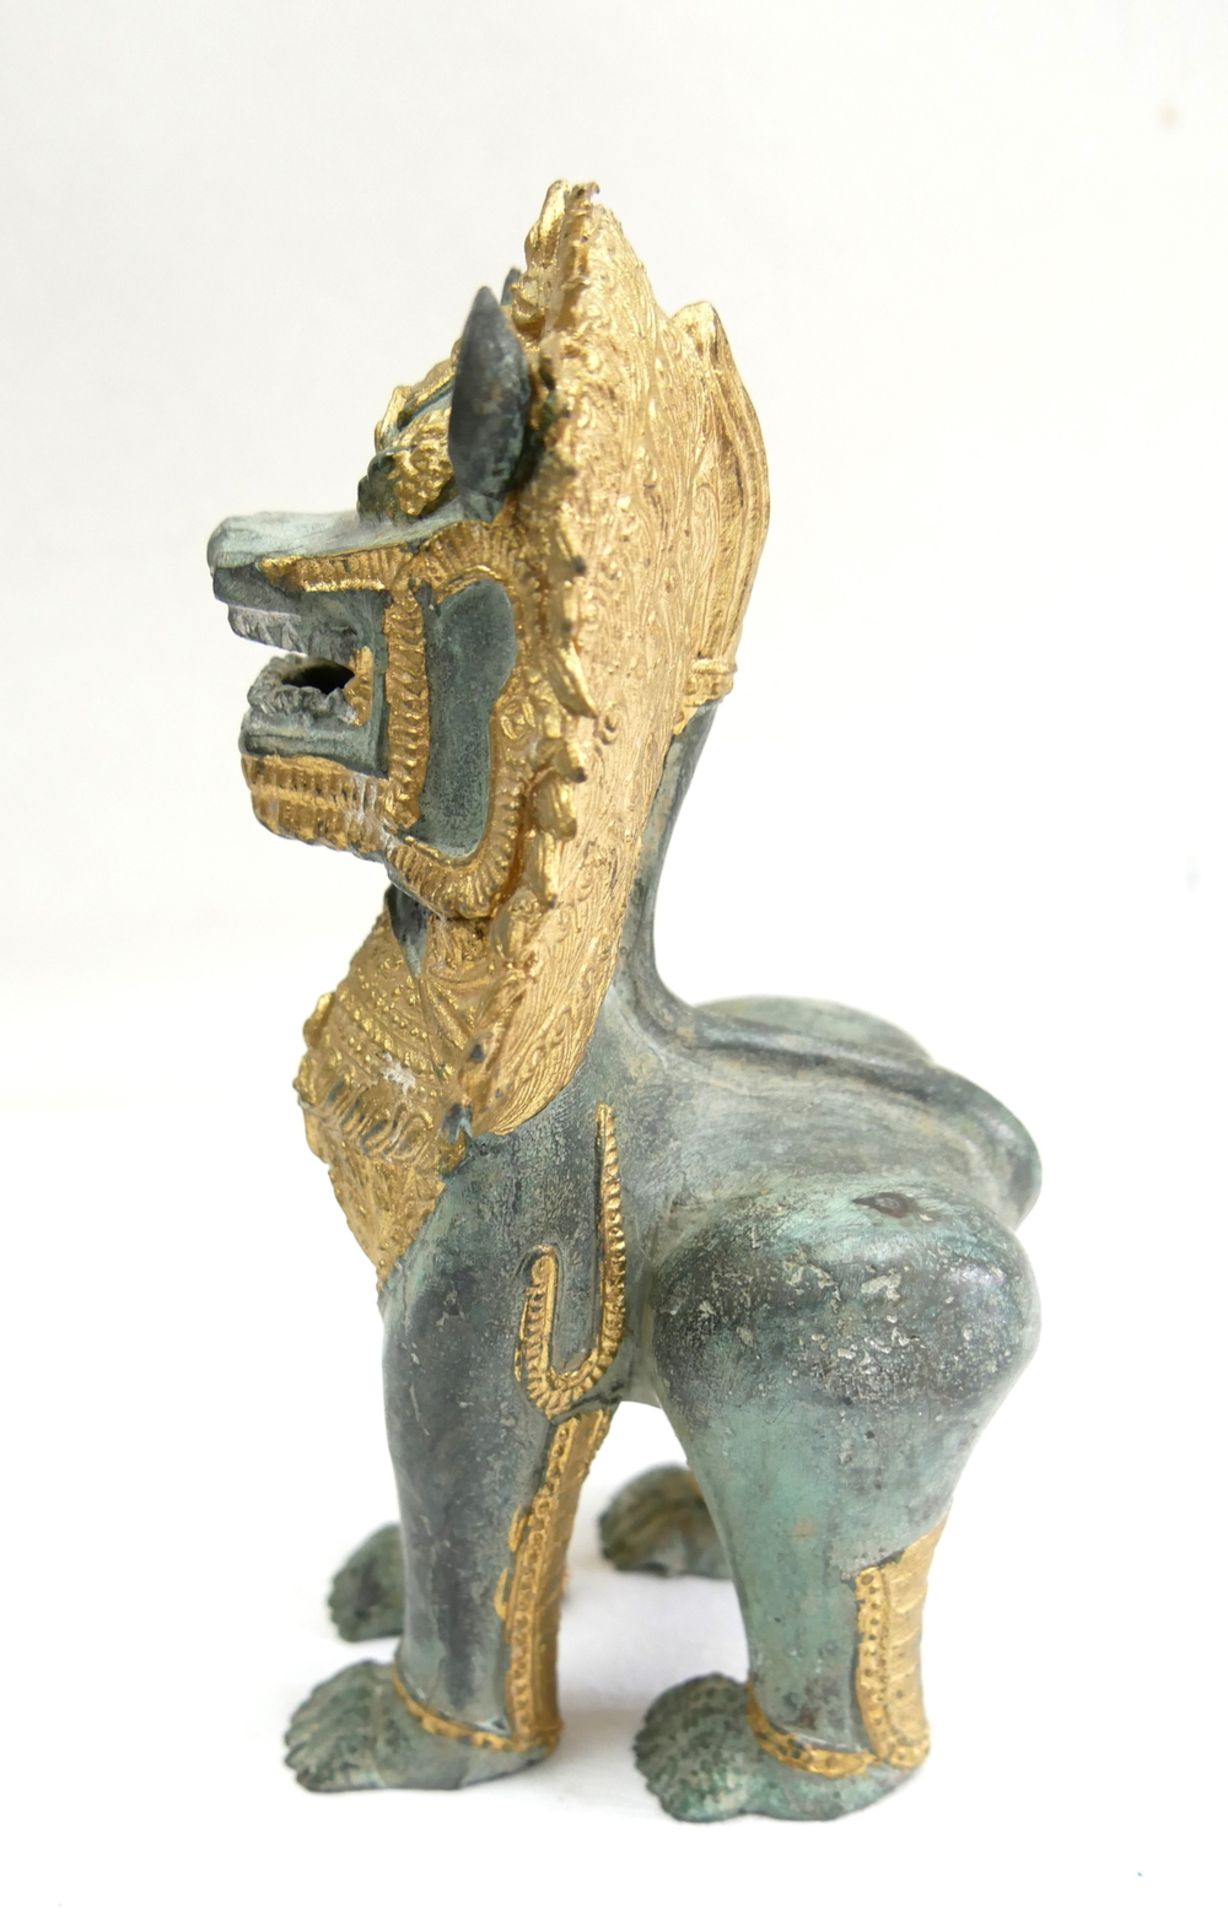 Thai Singha Tempelwächter Löwe - Foo Hund, Steinskulptur mit goldenen Details. Höhe ca. 18 cm - Bild 2 aus 2